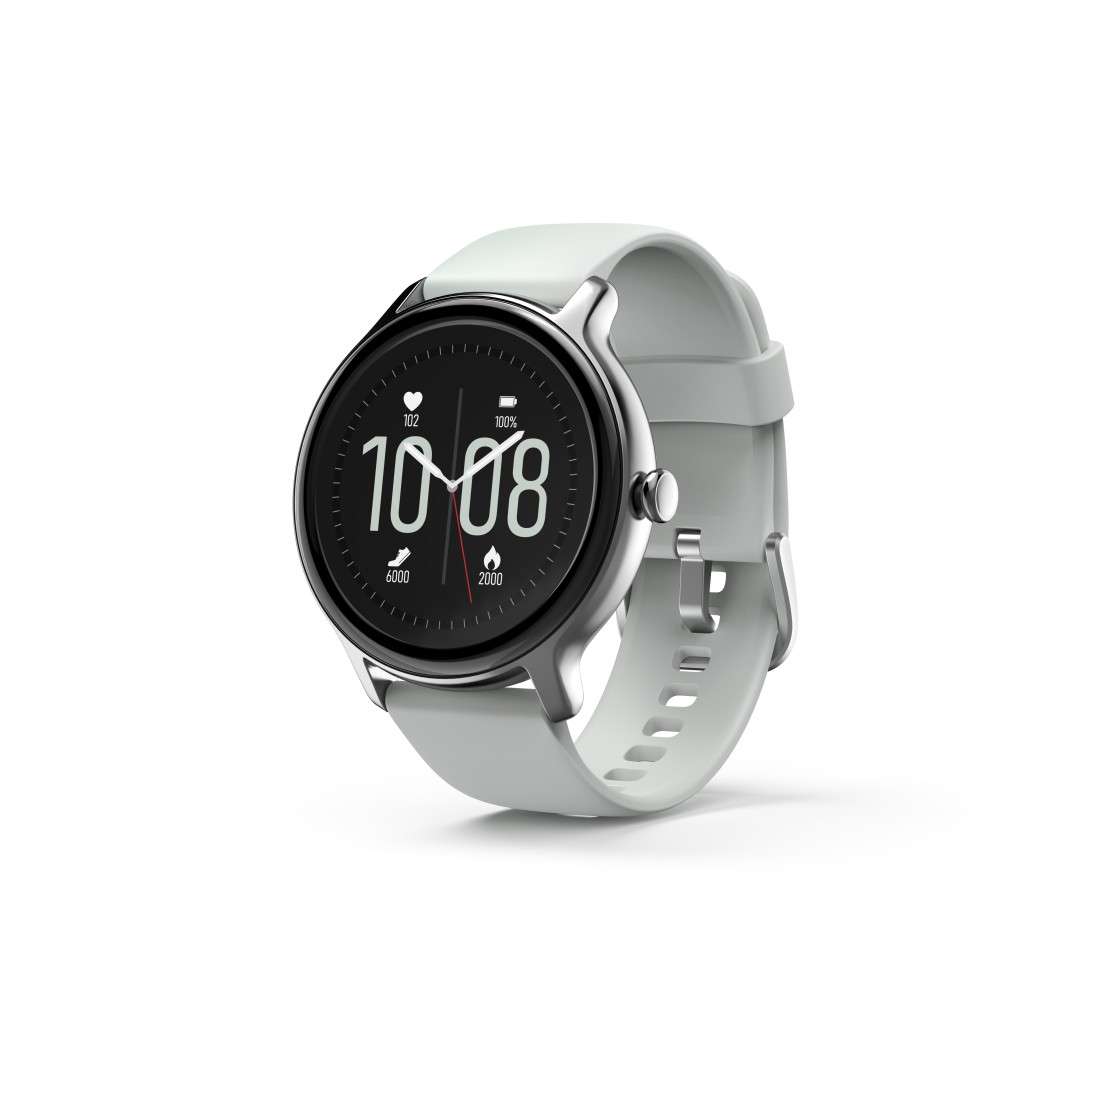 HAMA Smartwatch Fit Watch 4910, wasserdicht, Herzfrequenz, Blutsauerstoff, Gr.